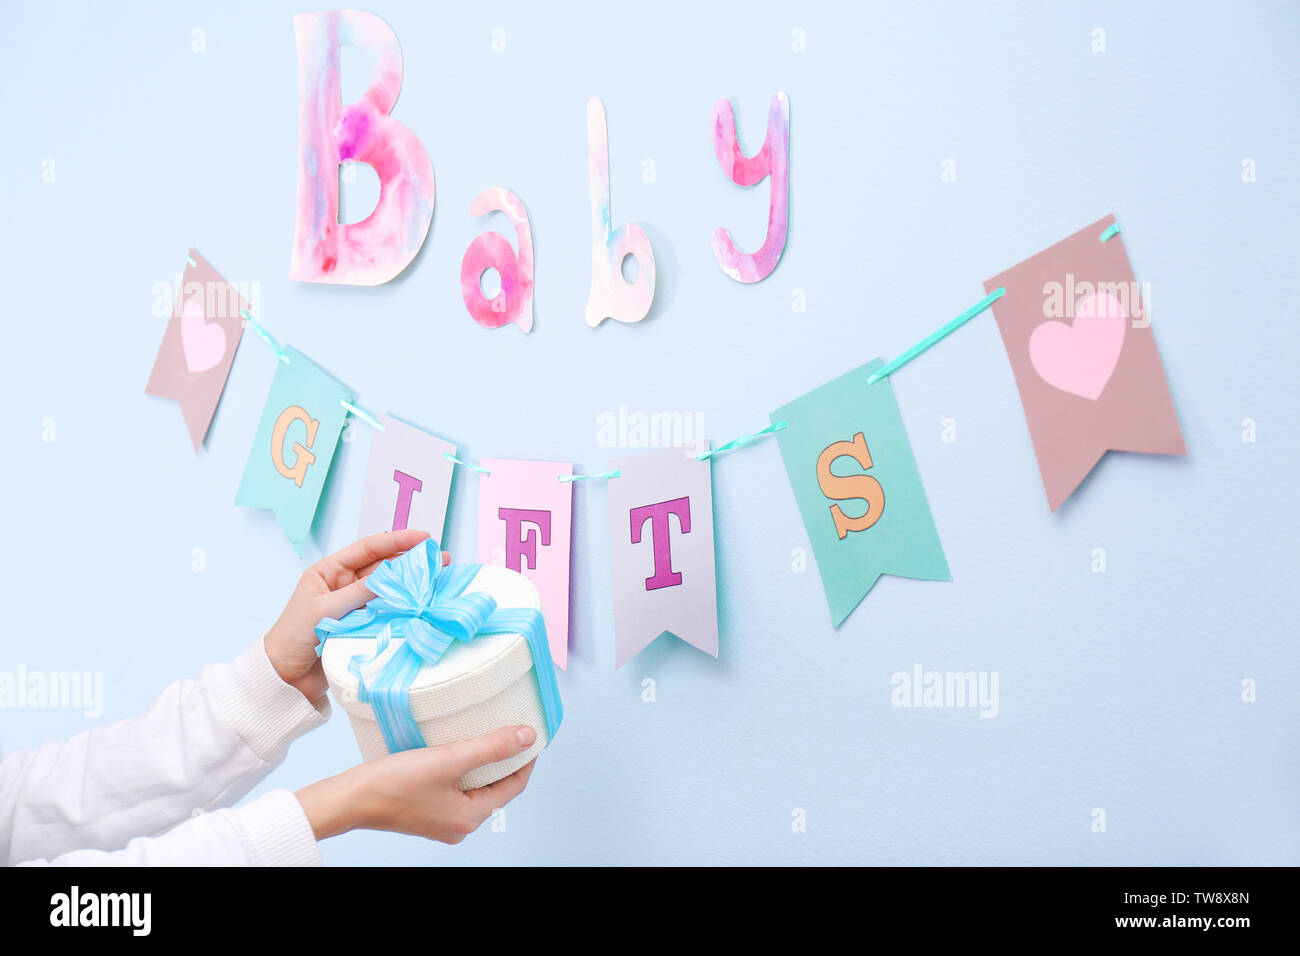 Regalos y decoraciones para baby shower en interiores Fotografía de stock -  Alamy